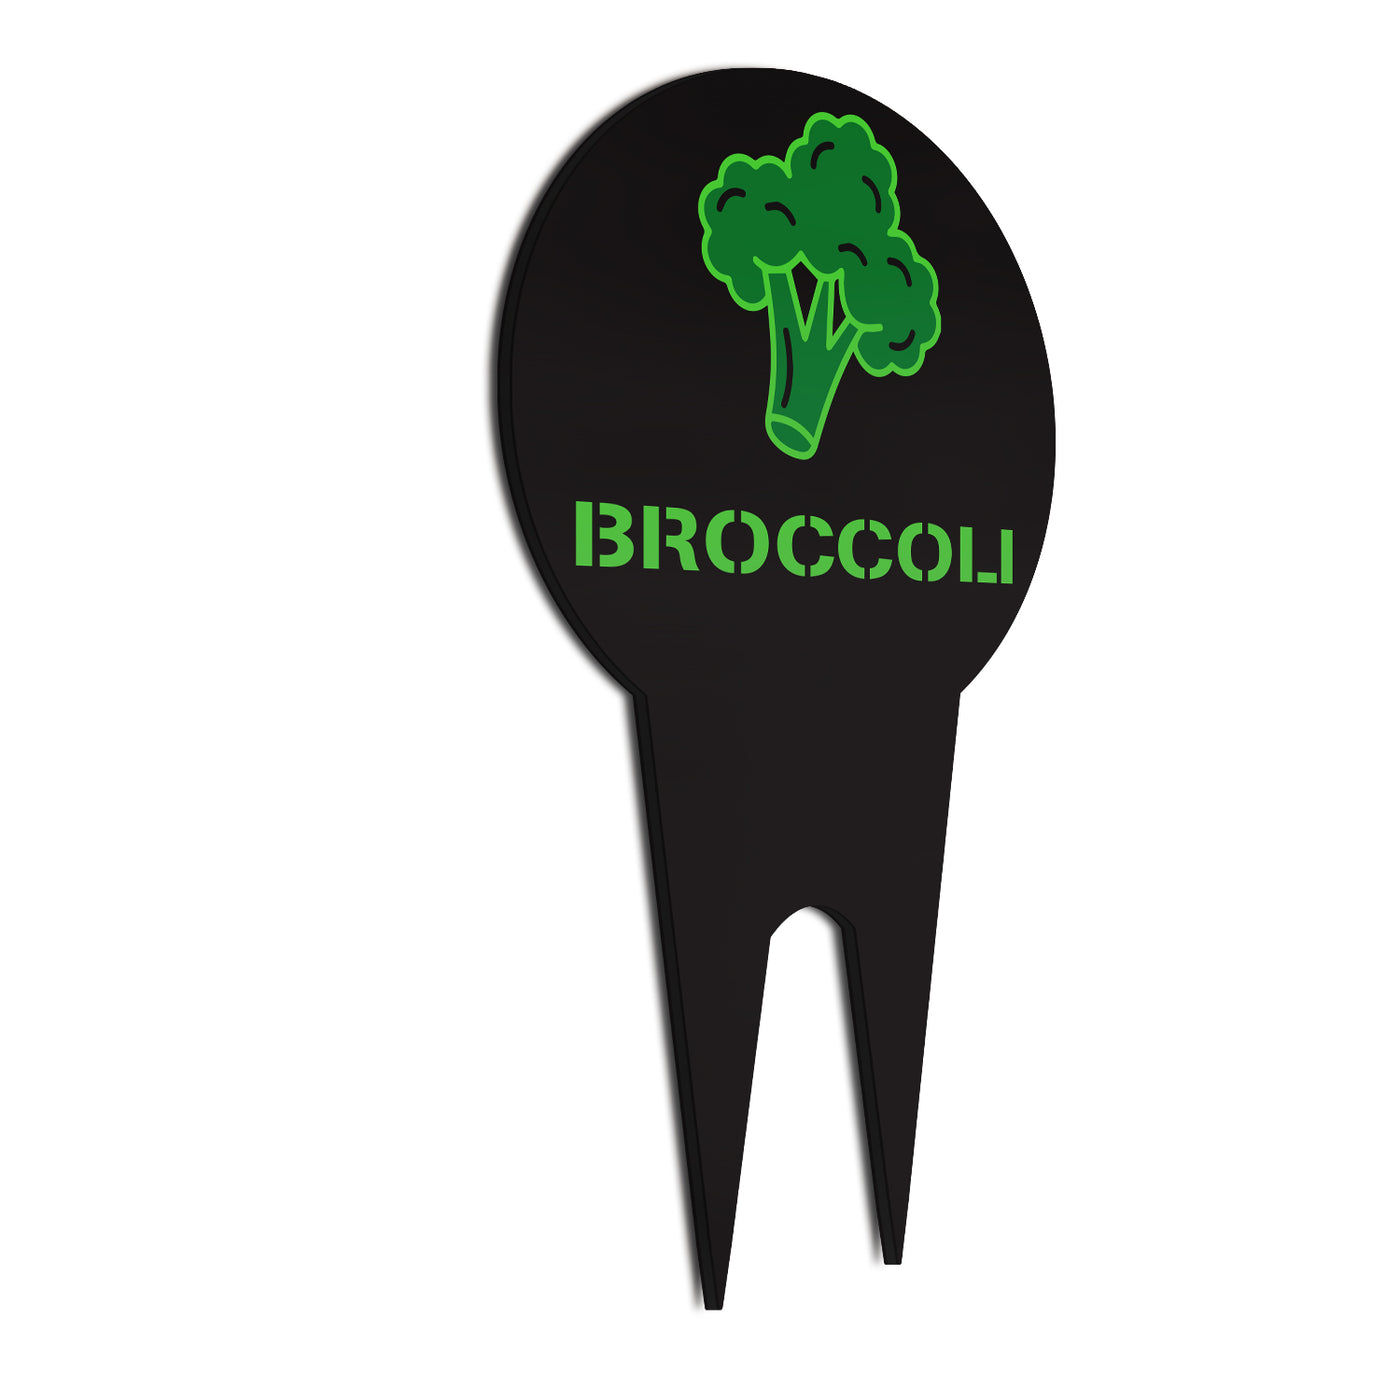 Crop Marker Broccoli